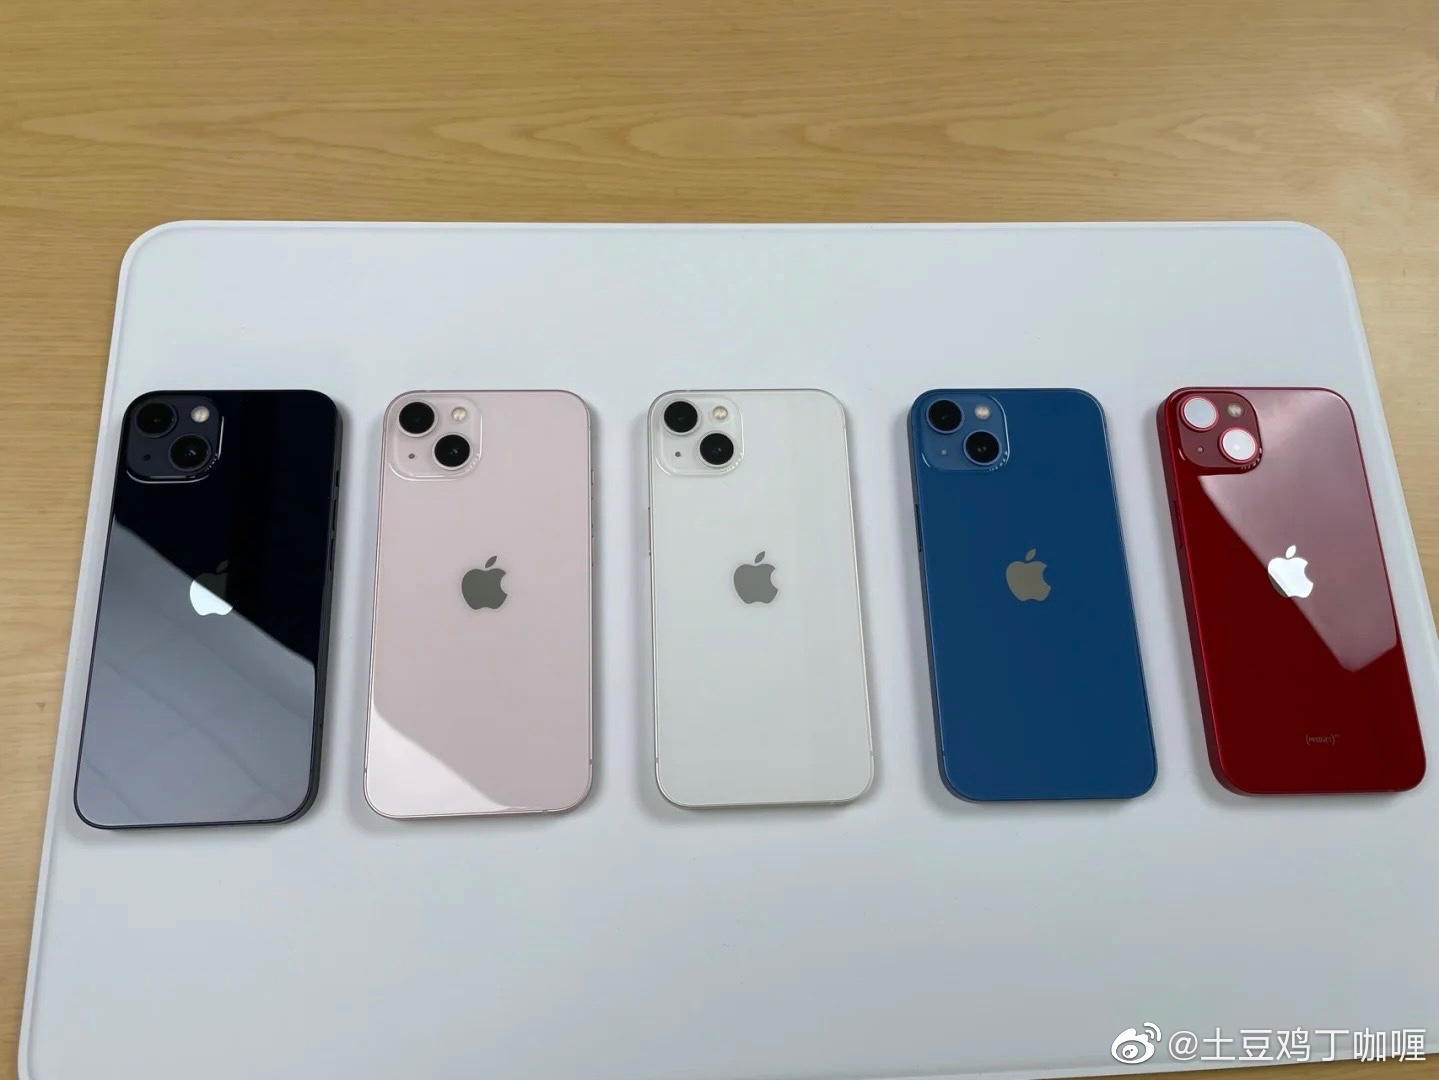 Hoàng Duy Apple – tên tuổi đình đám trong thế giới công nghệ. Nếu bạn là fan của những sản phẩm của ông, hãy xem những ảnh về iPhone 13 Pro Max liên quan để thấy sự tuyệt vời và đẳng cấp của sản phẩm này.